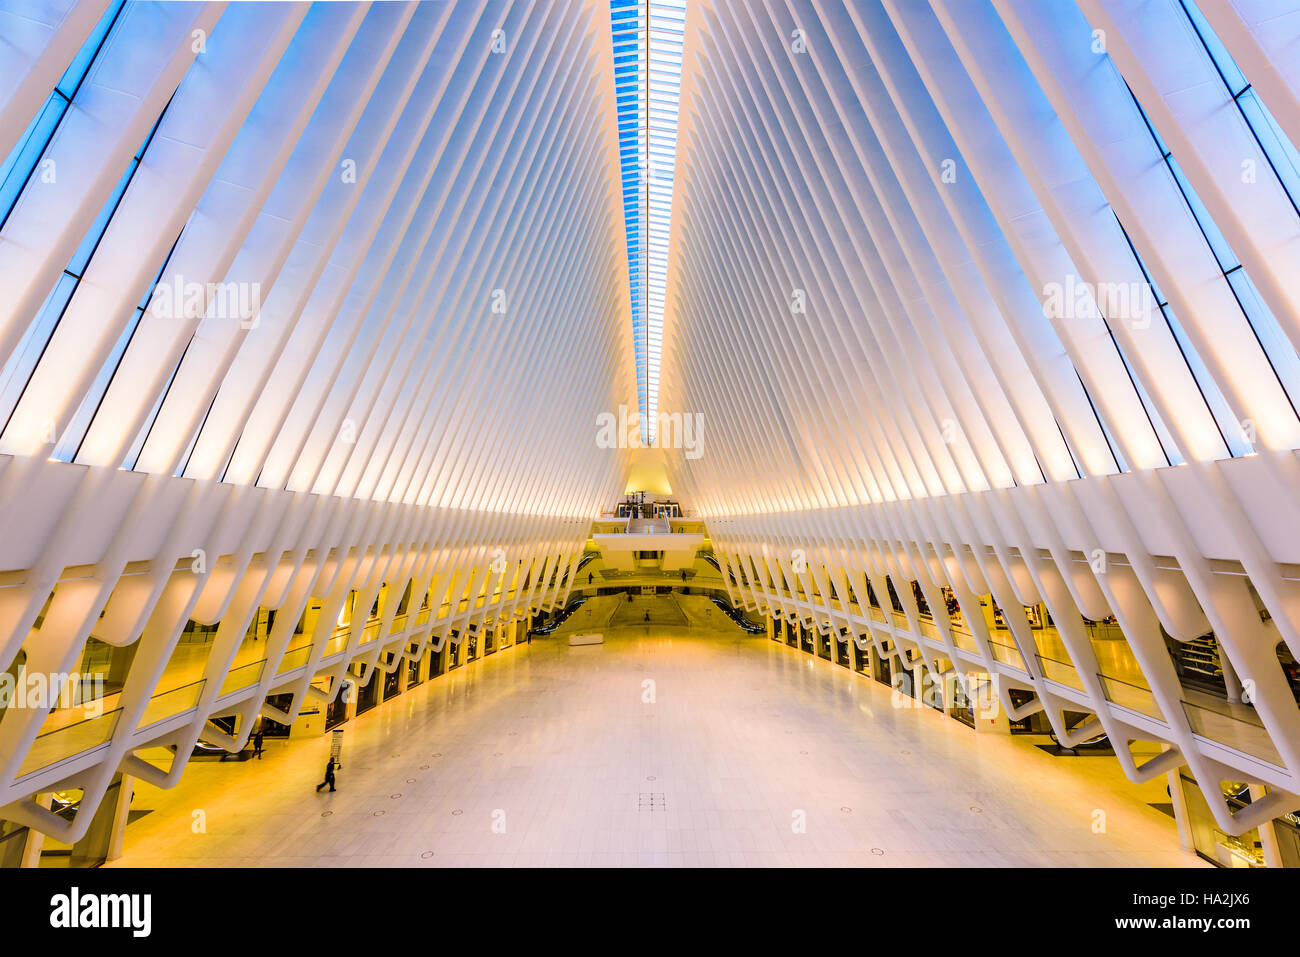 La VILLE DE NEW YORK, USA - 23 octobre 2016 : Le World Trade Center Westfield Mall et centre des transports dans le Lower Manhattan. Banque D'Images